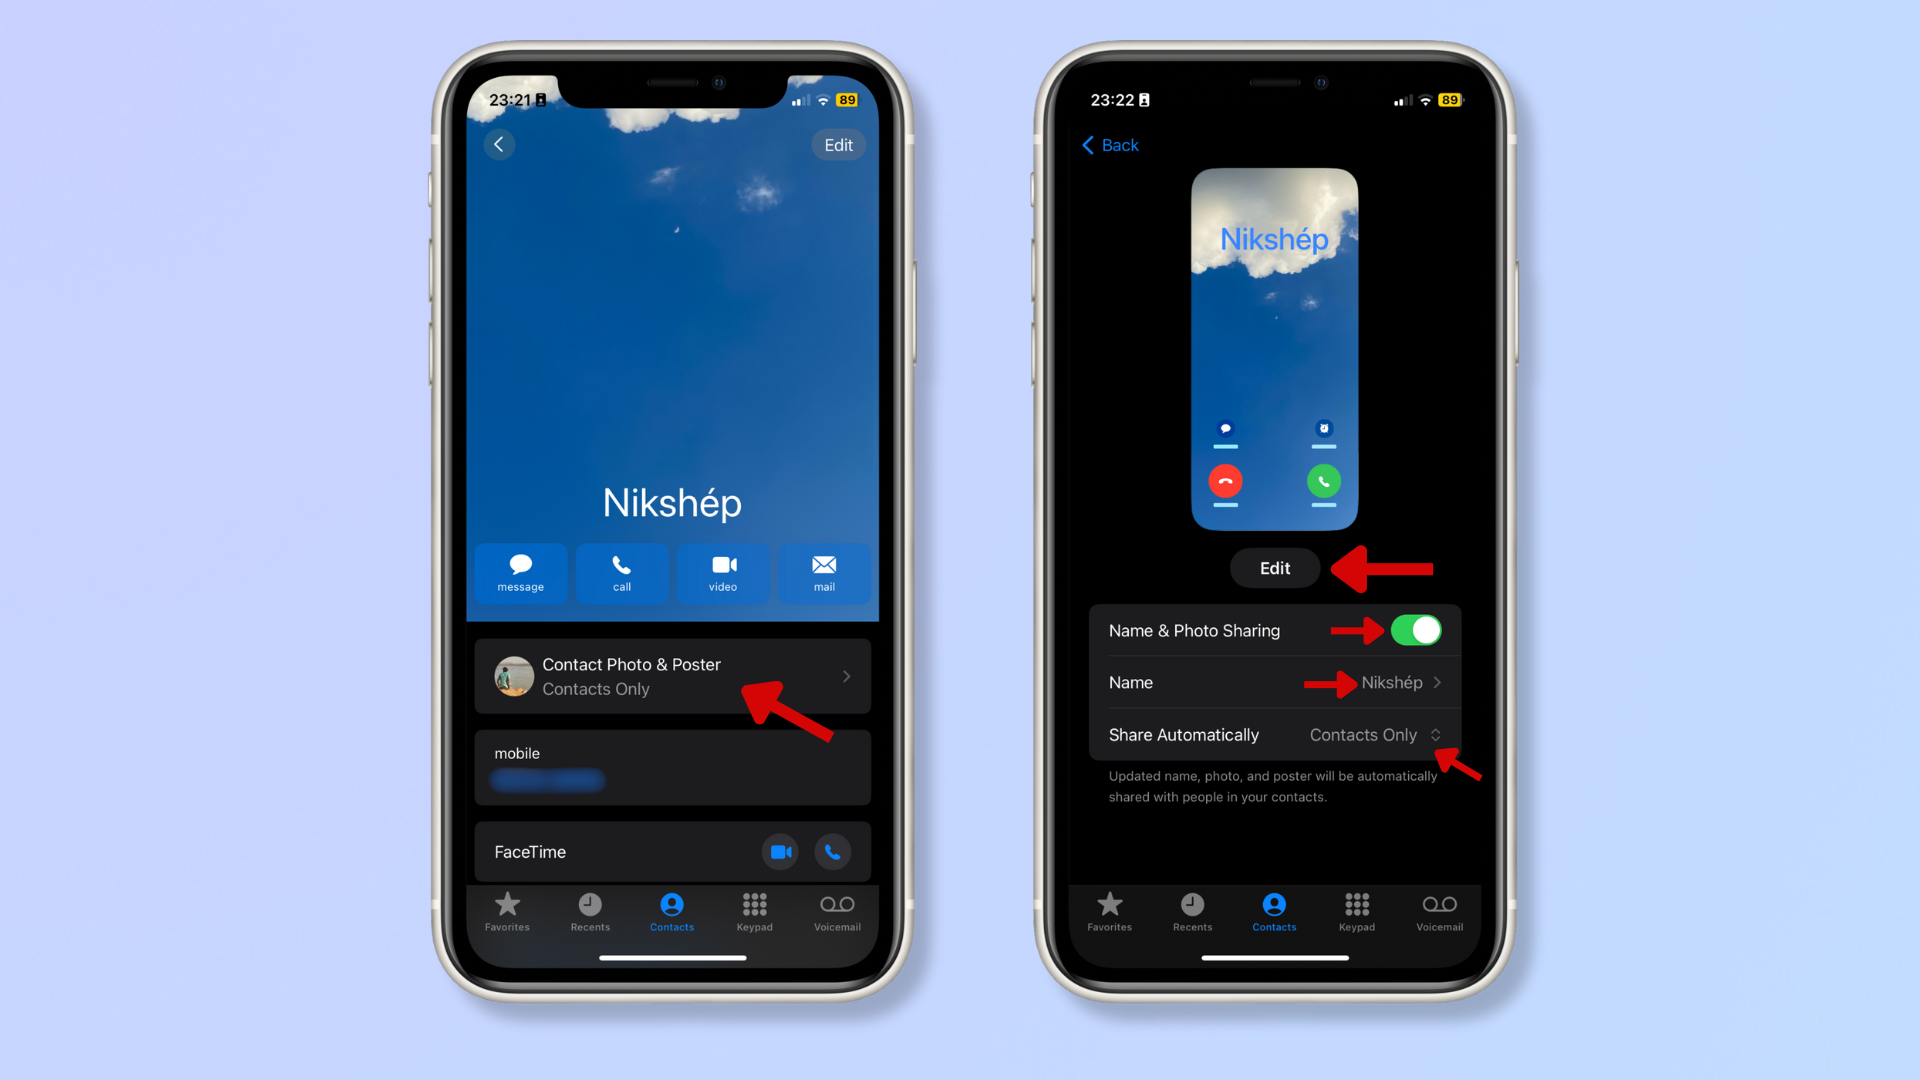 La primera captura de pantalla muestra la tarjeta de contacto en el iPhone con una flecha roja que apunta a la foto y la etiqueta del contacto.  La segunda captura de pantalla muestra la lista de tarjetas de contacto con flechas rojas apuntando hacia arriba. 